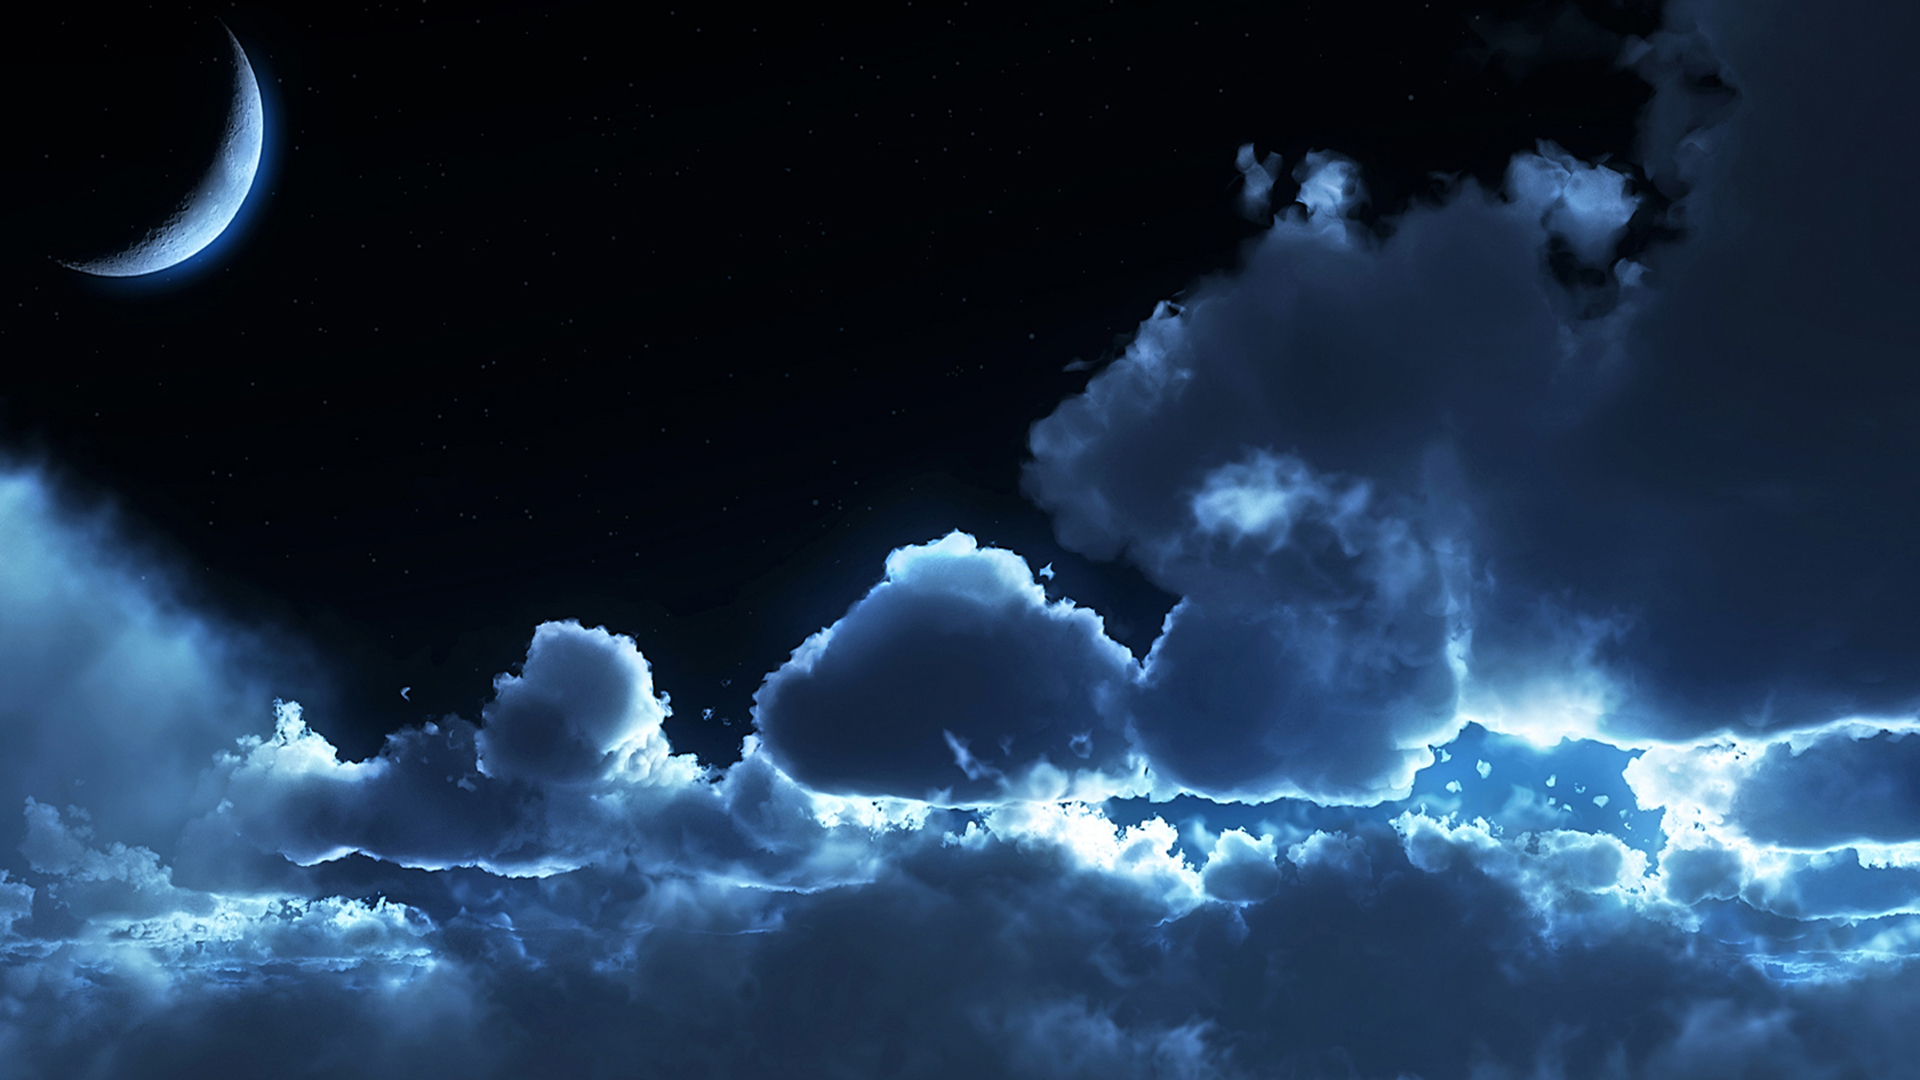 Tải 100 hình nền bầu trời đêm đầy sao HD đẹp lung linh  TRƯỜNG THPT TRẦN  HƯNG ĐẠO